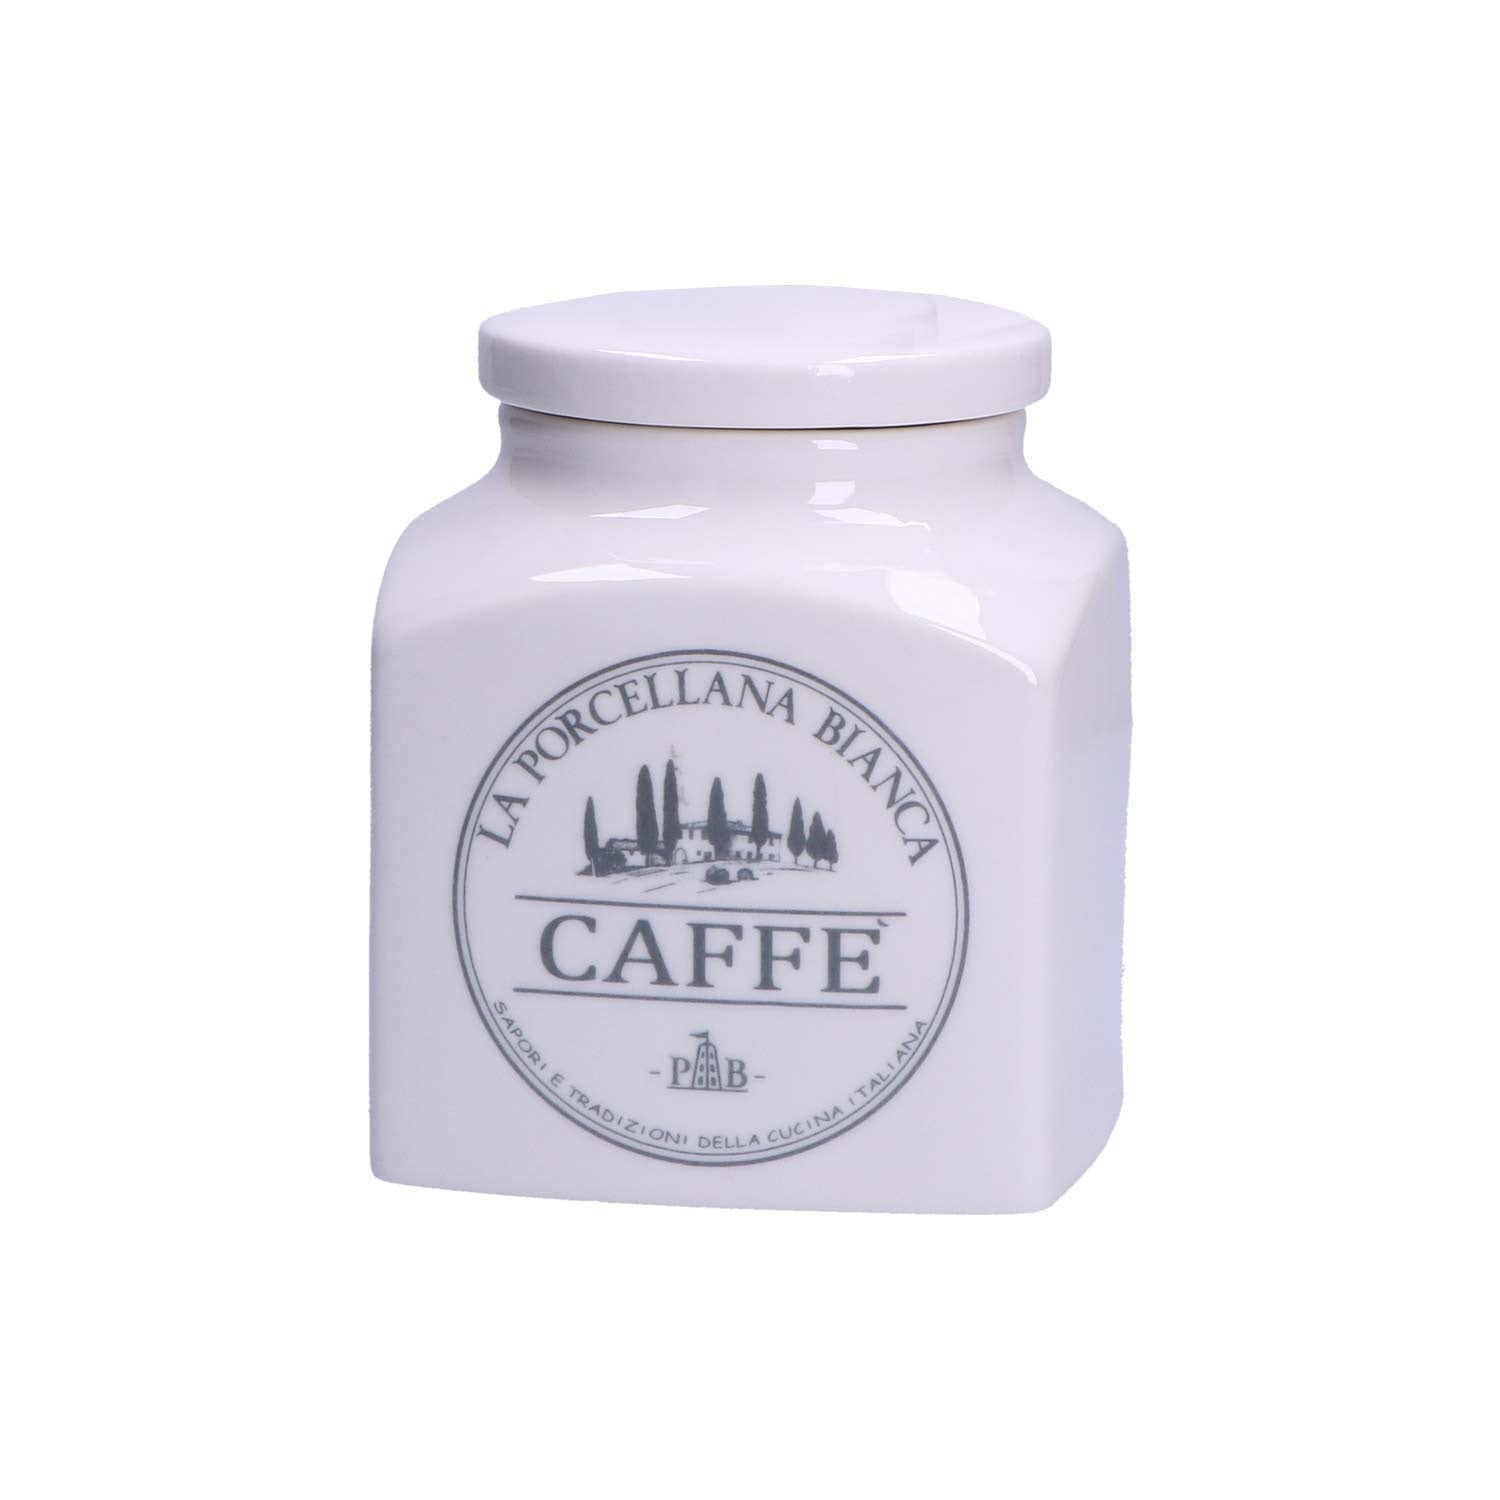 LA PORCELLANA BIANCA - Conserva Barattolo Contenitore Caffè 1,1 L